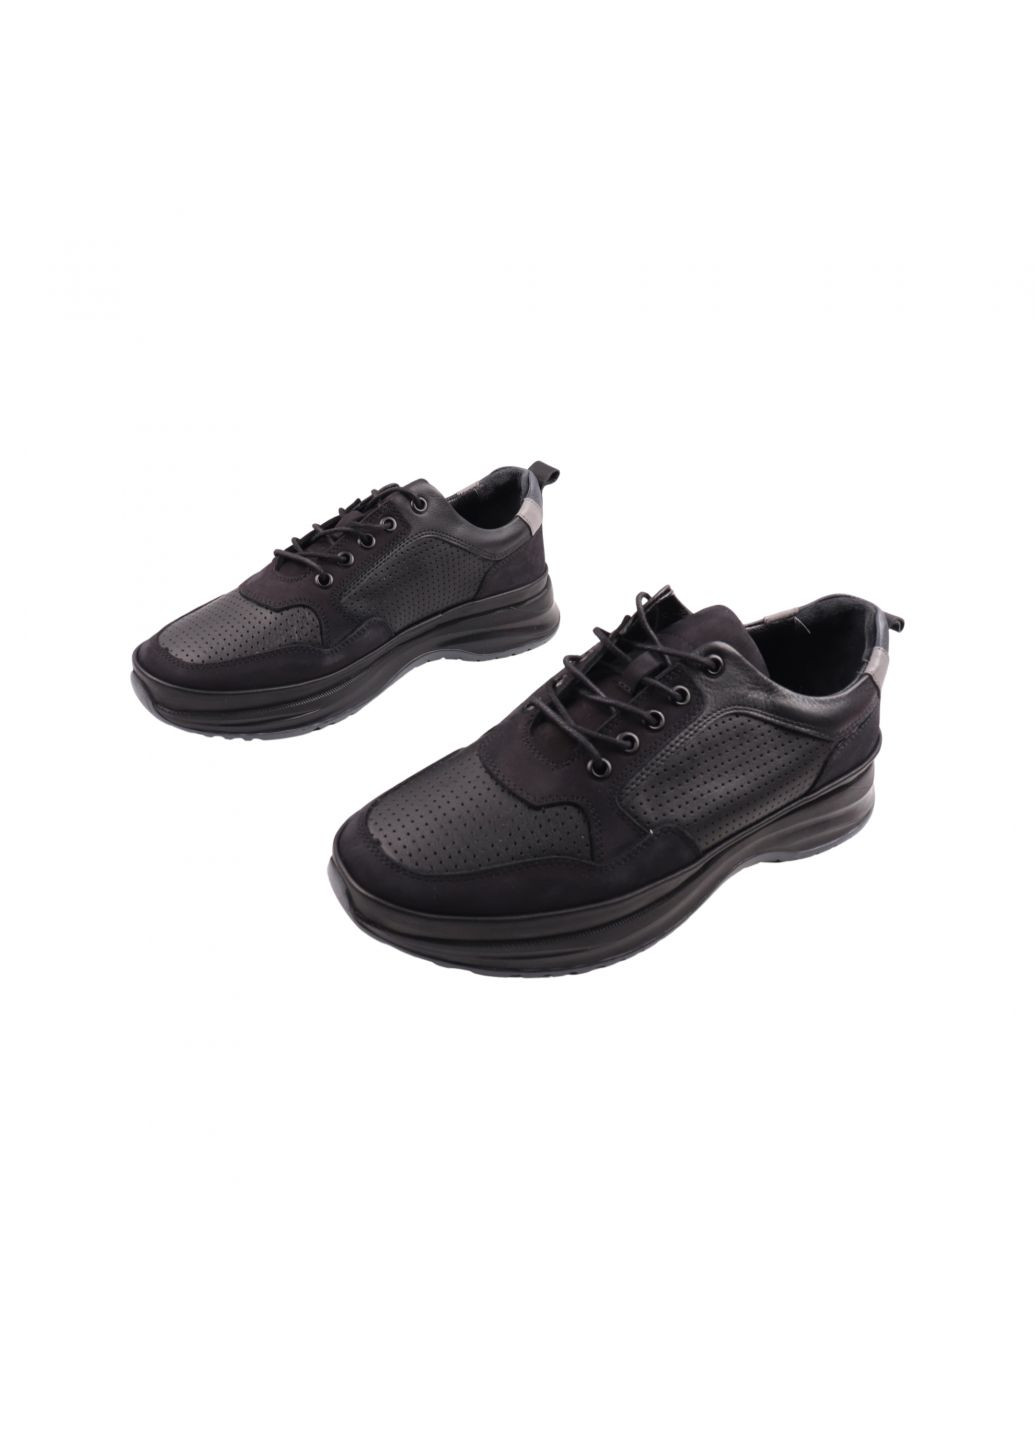 Черные кроссовки мужские черные натуральная кожа Ridge 469-23DTS